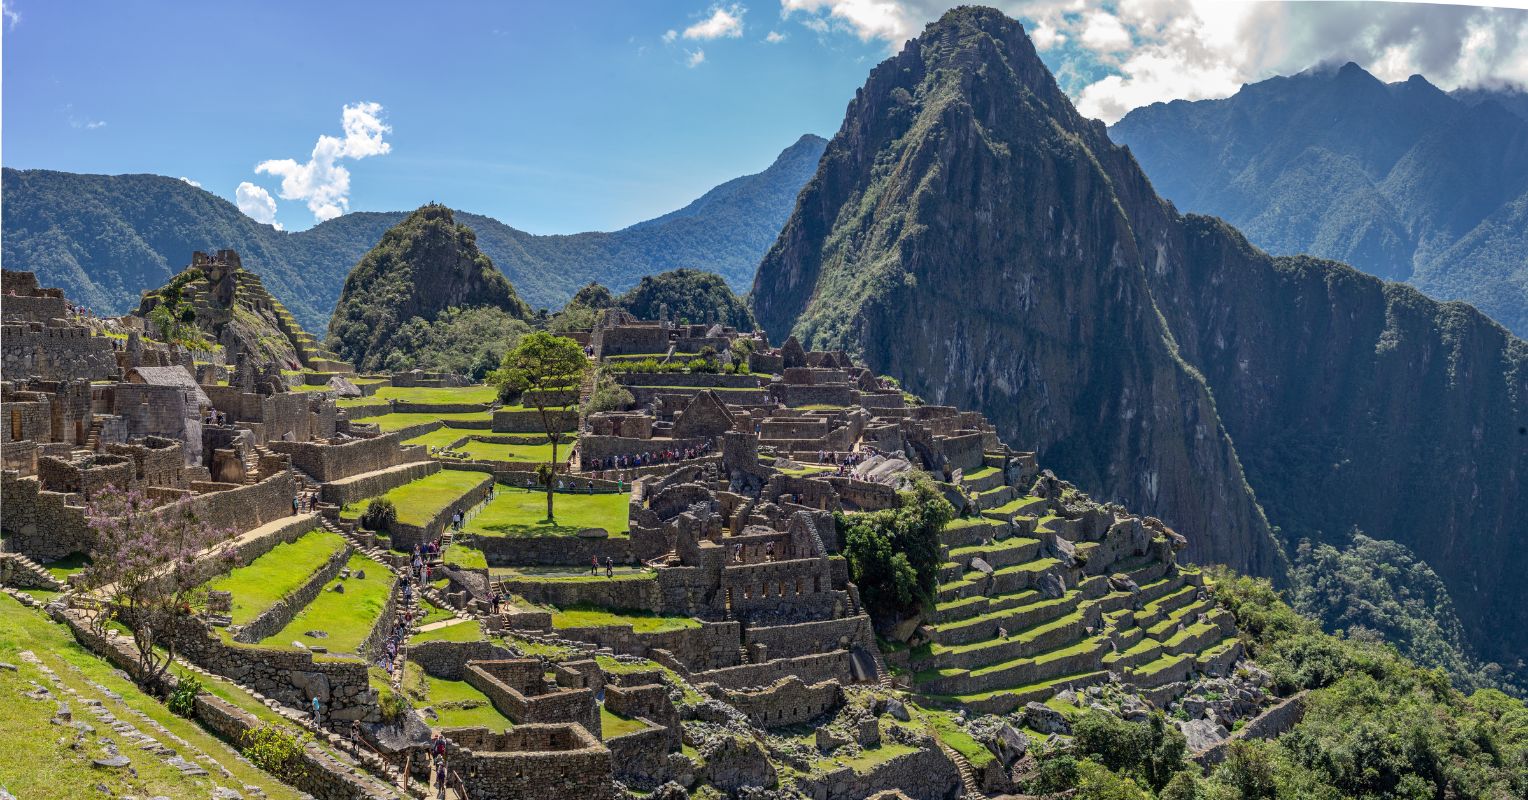 Image of Machu Picchu's beautiful landscape